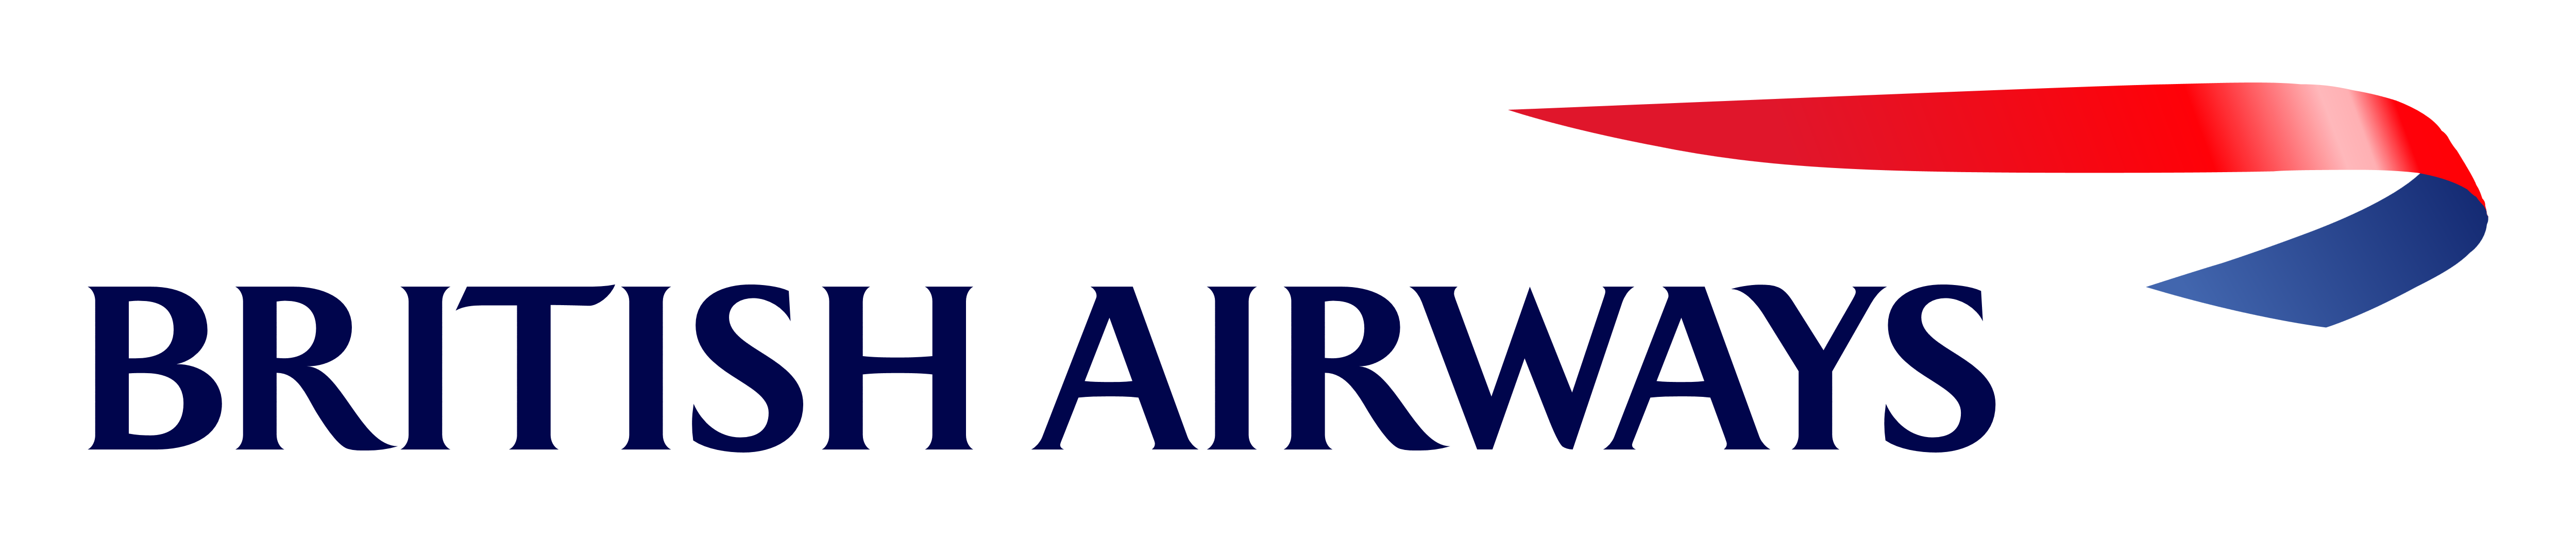 British_Airways_logo-229242428